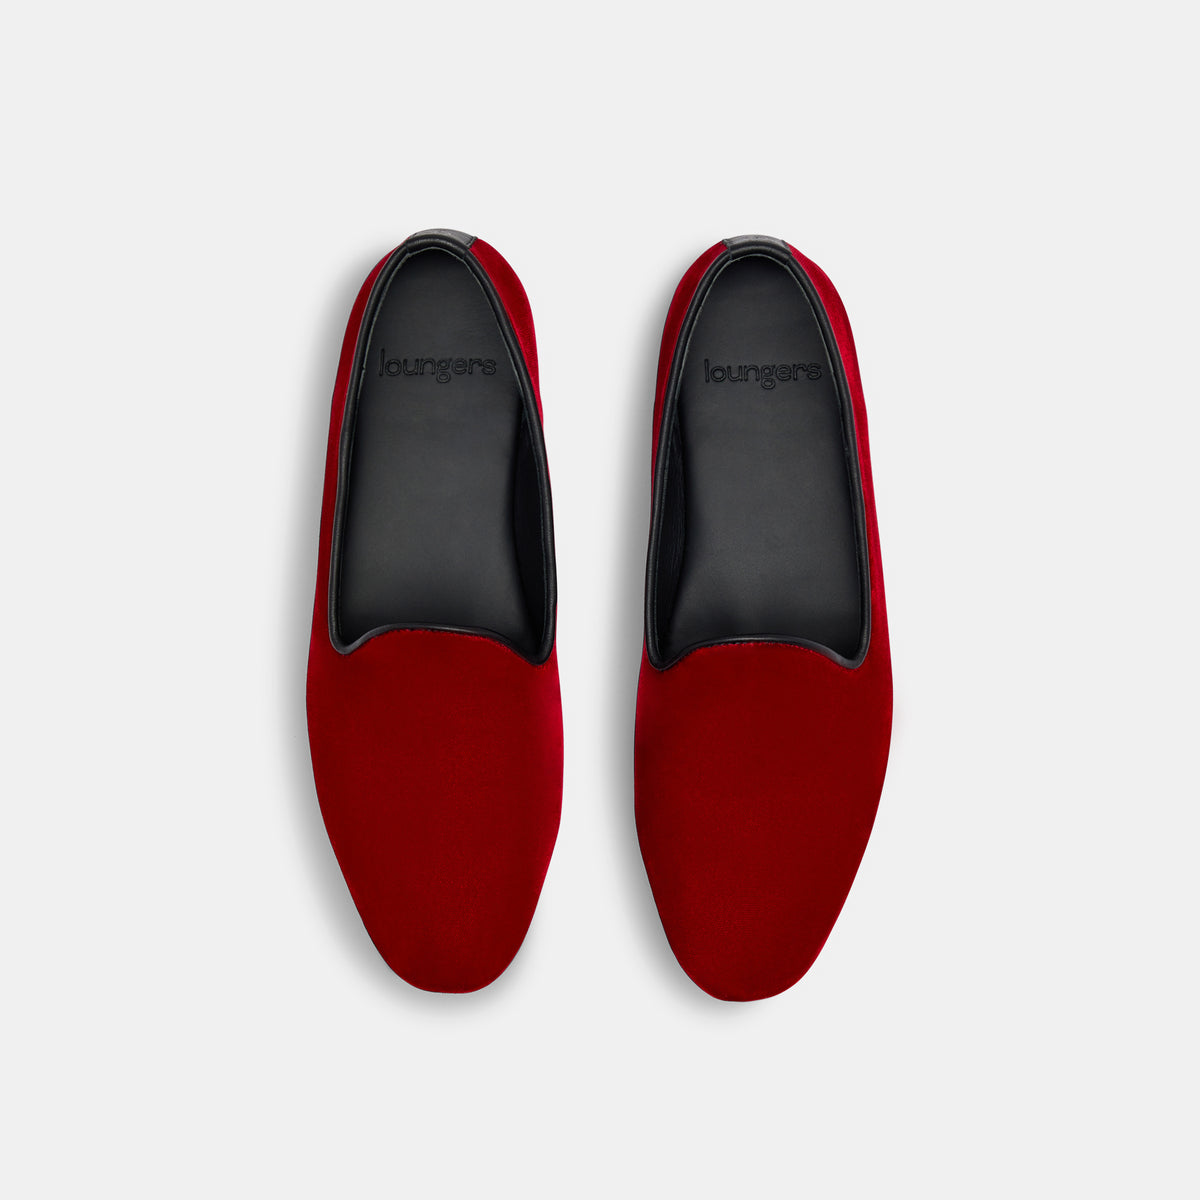 Cherry Red Color Velvet Loafer Style Slip-on For Men | VelourIndia